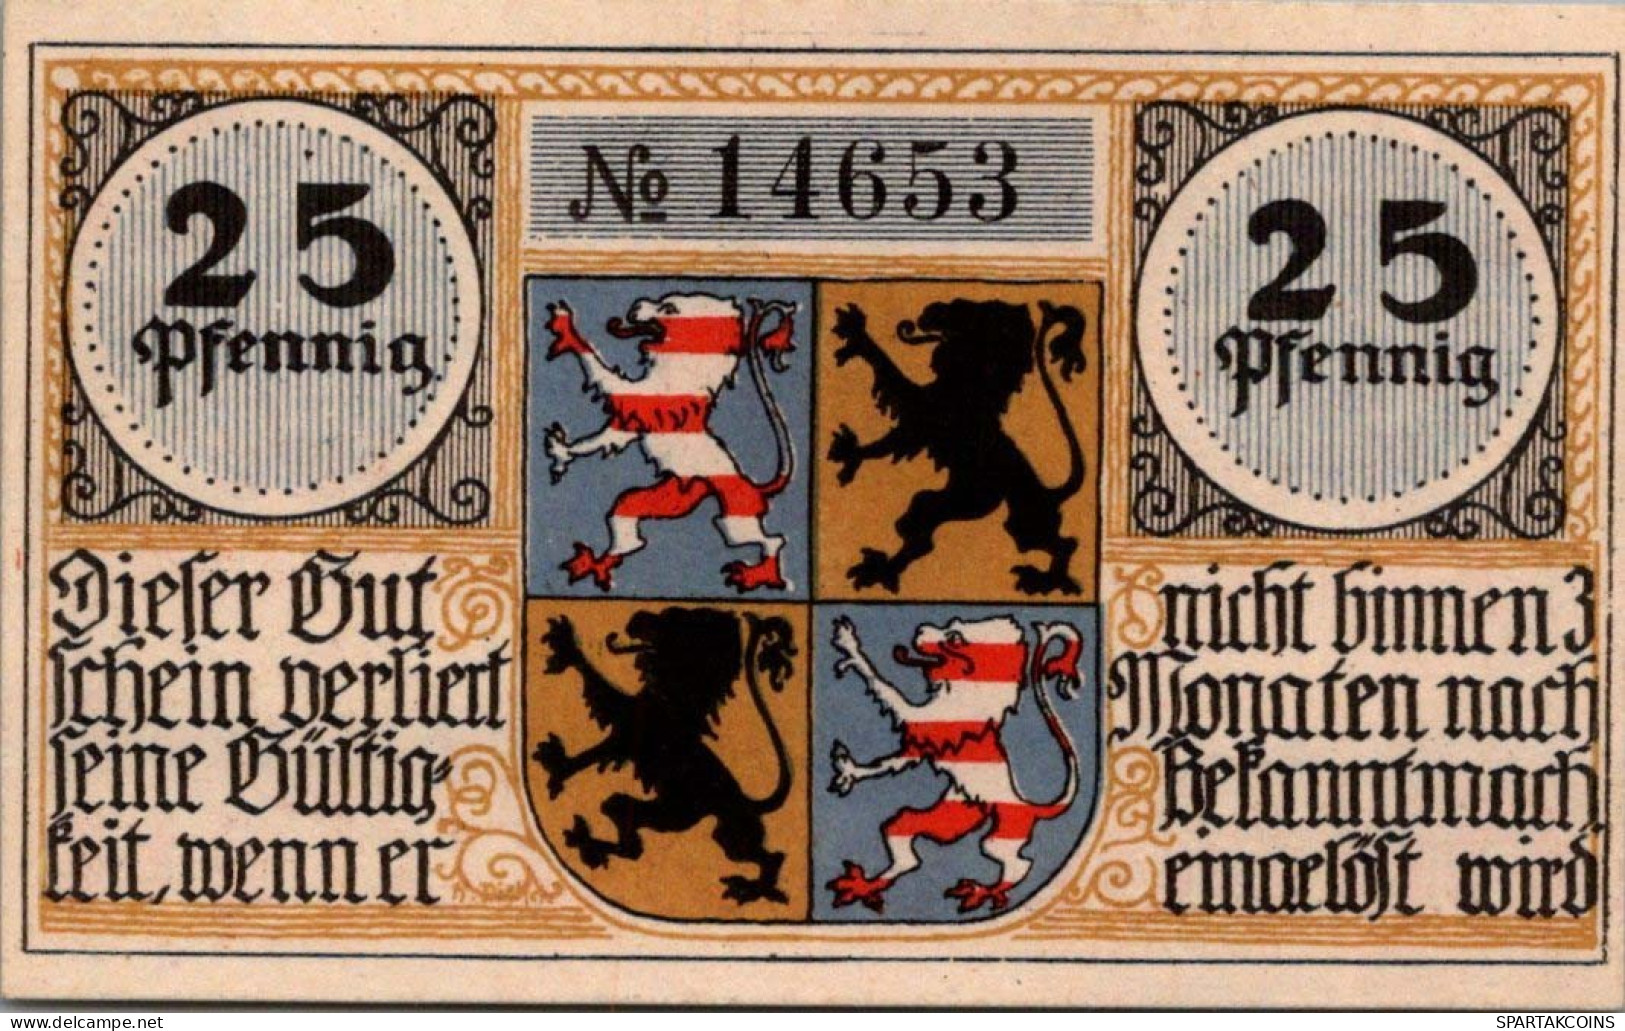 25 PFENNIG Stadt HILDBURGHAUSEN Thuringia DEUTSCHLAND Notgeld Banknote #PG260 - [11] Lokale Uitgaven